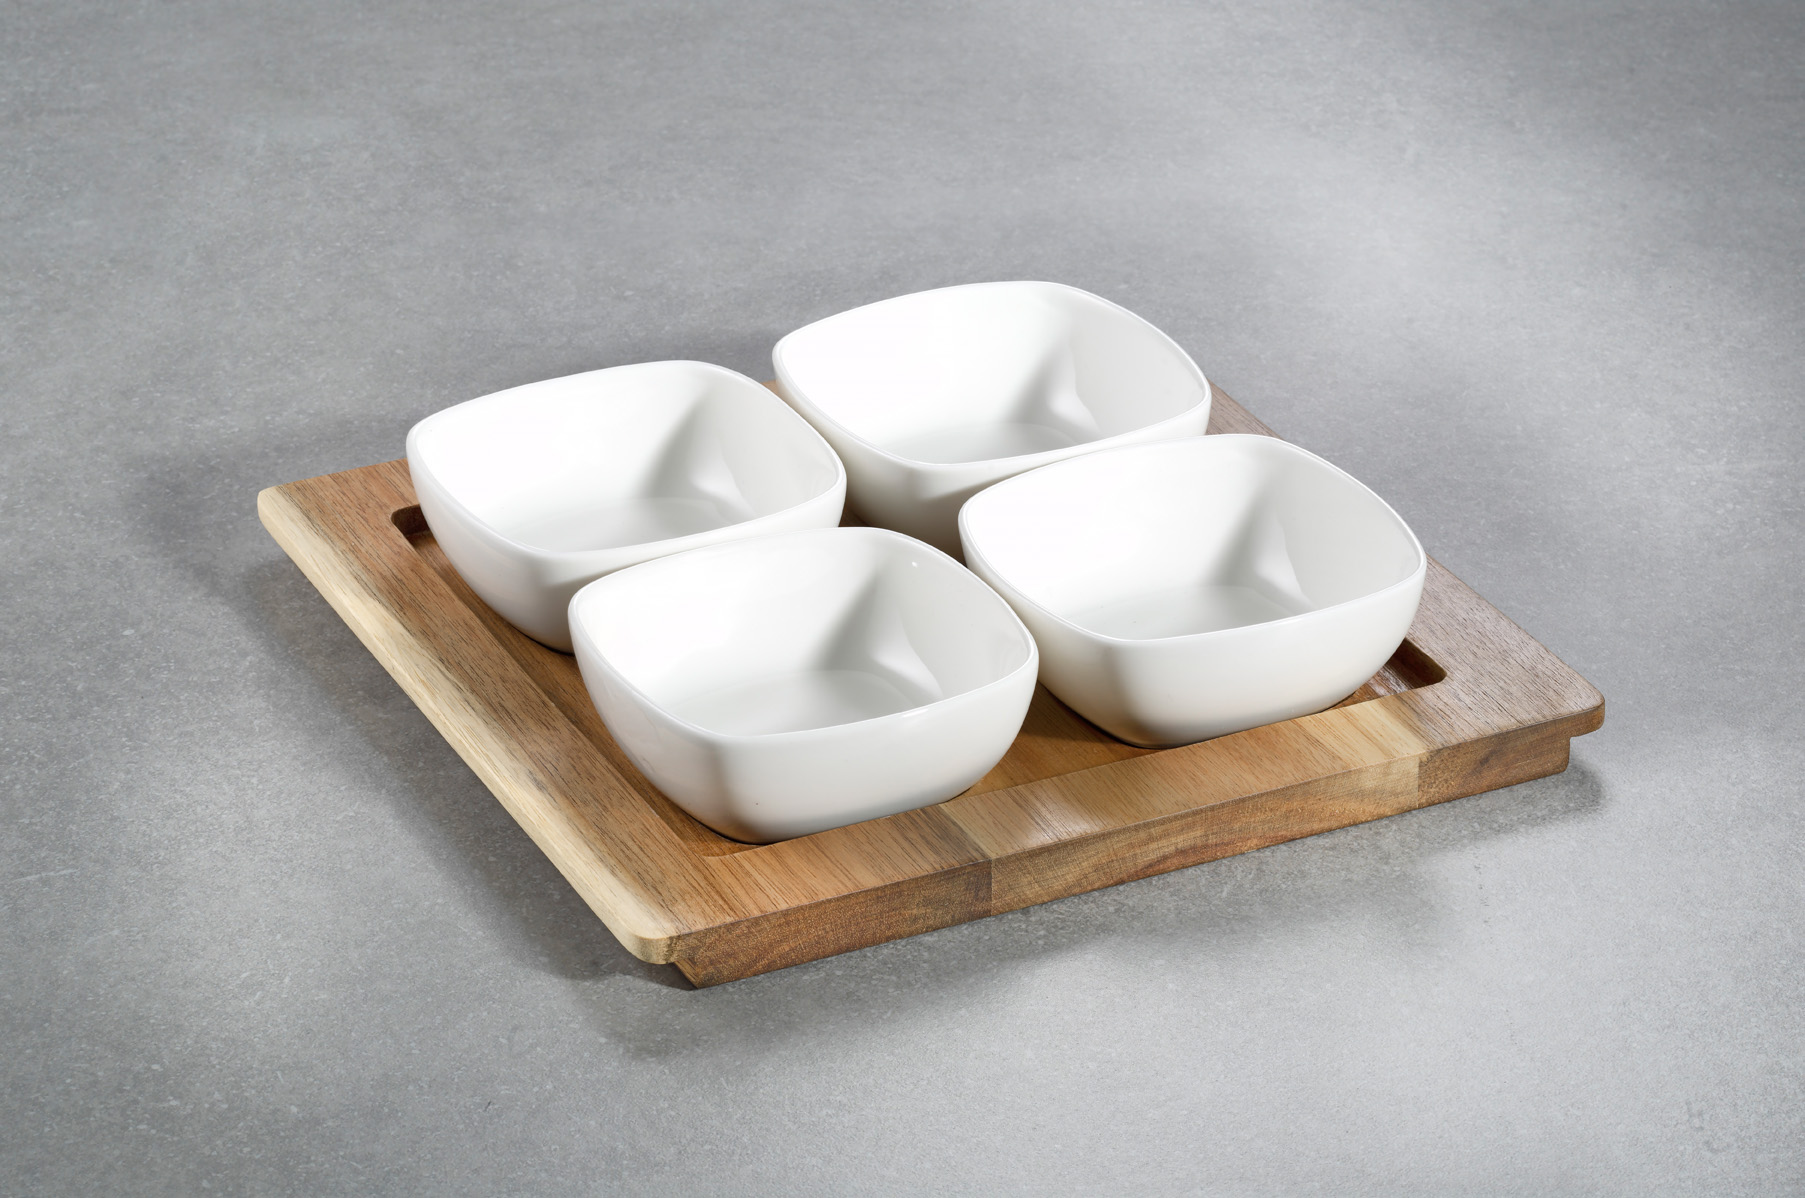 5-teiliges Servierschalen Set LUND, quadratisch 4 Schalen aus weißem Porzellan ca 10 x 10 x 3,9 cm 1 Tablett aus Akazienholz ca. 25 x 25 x 1,5 cm